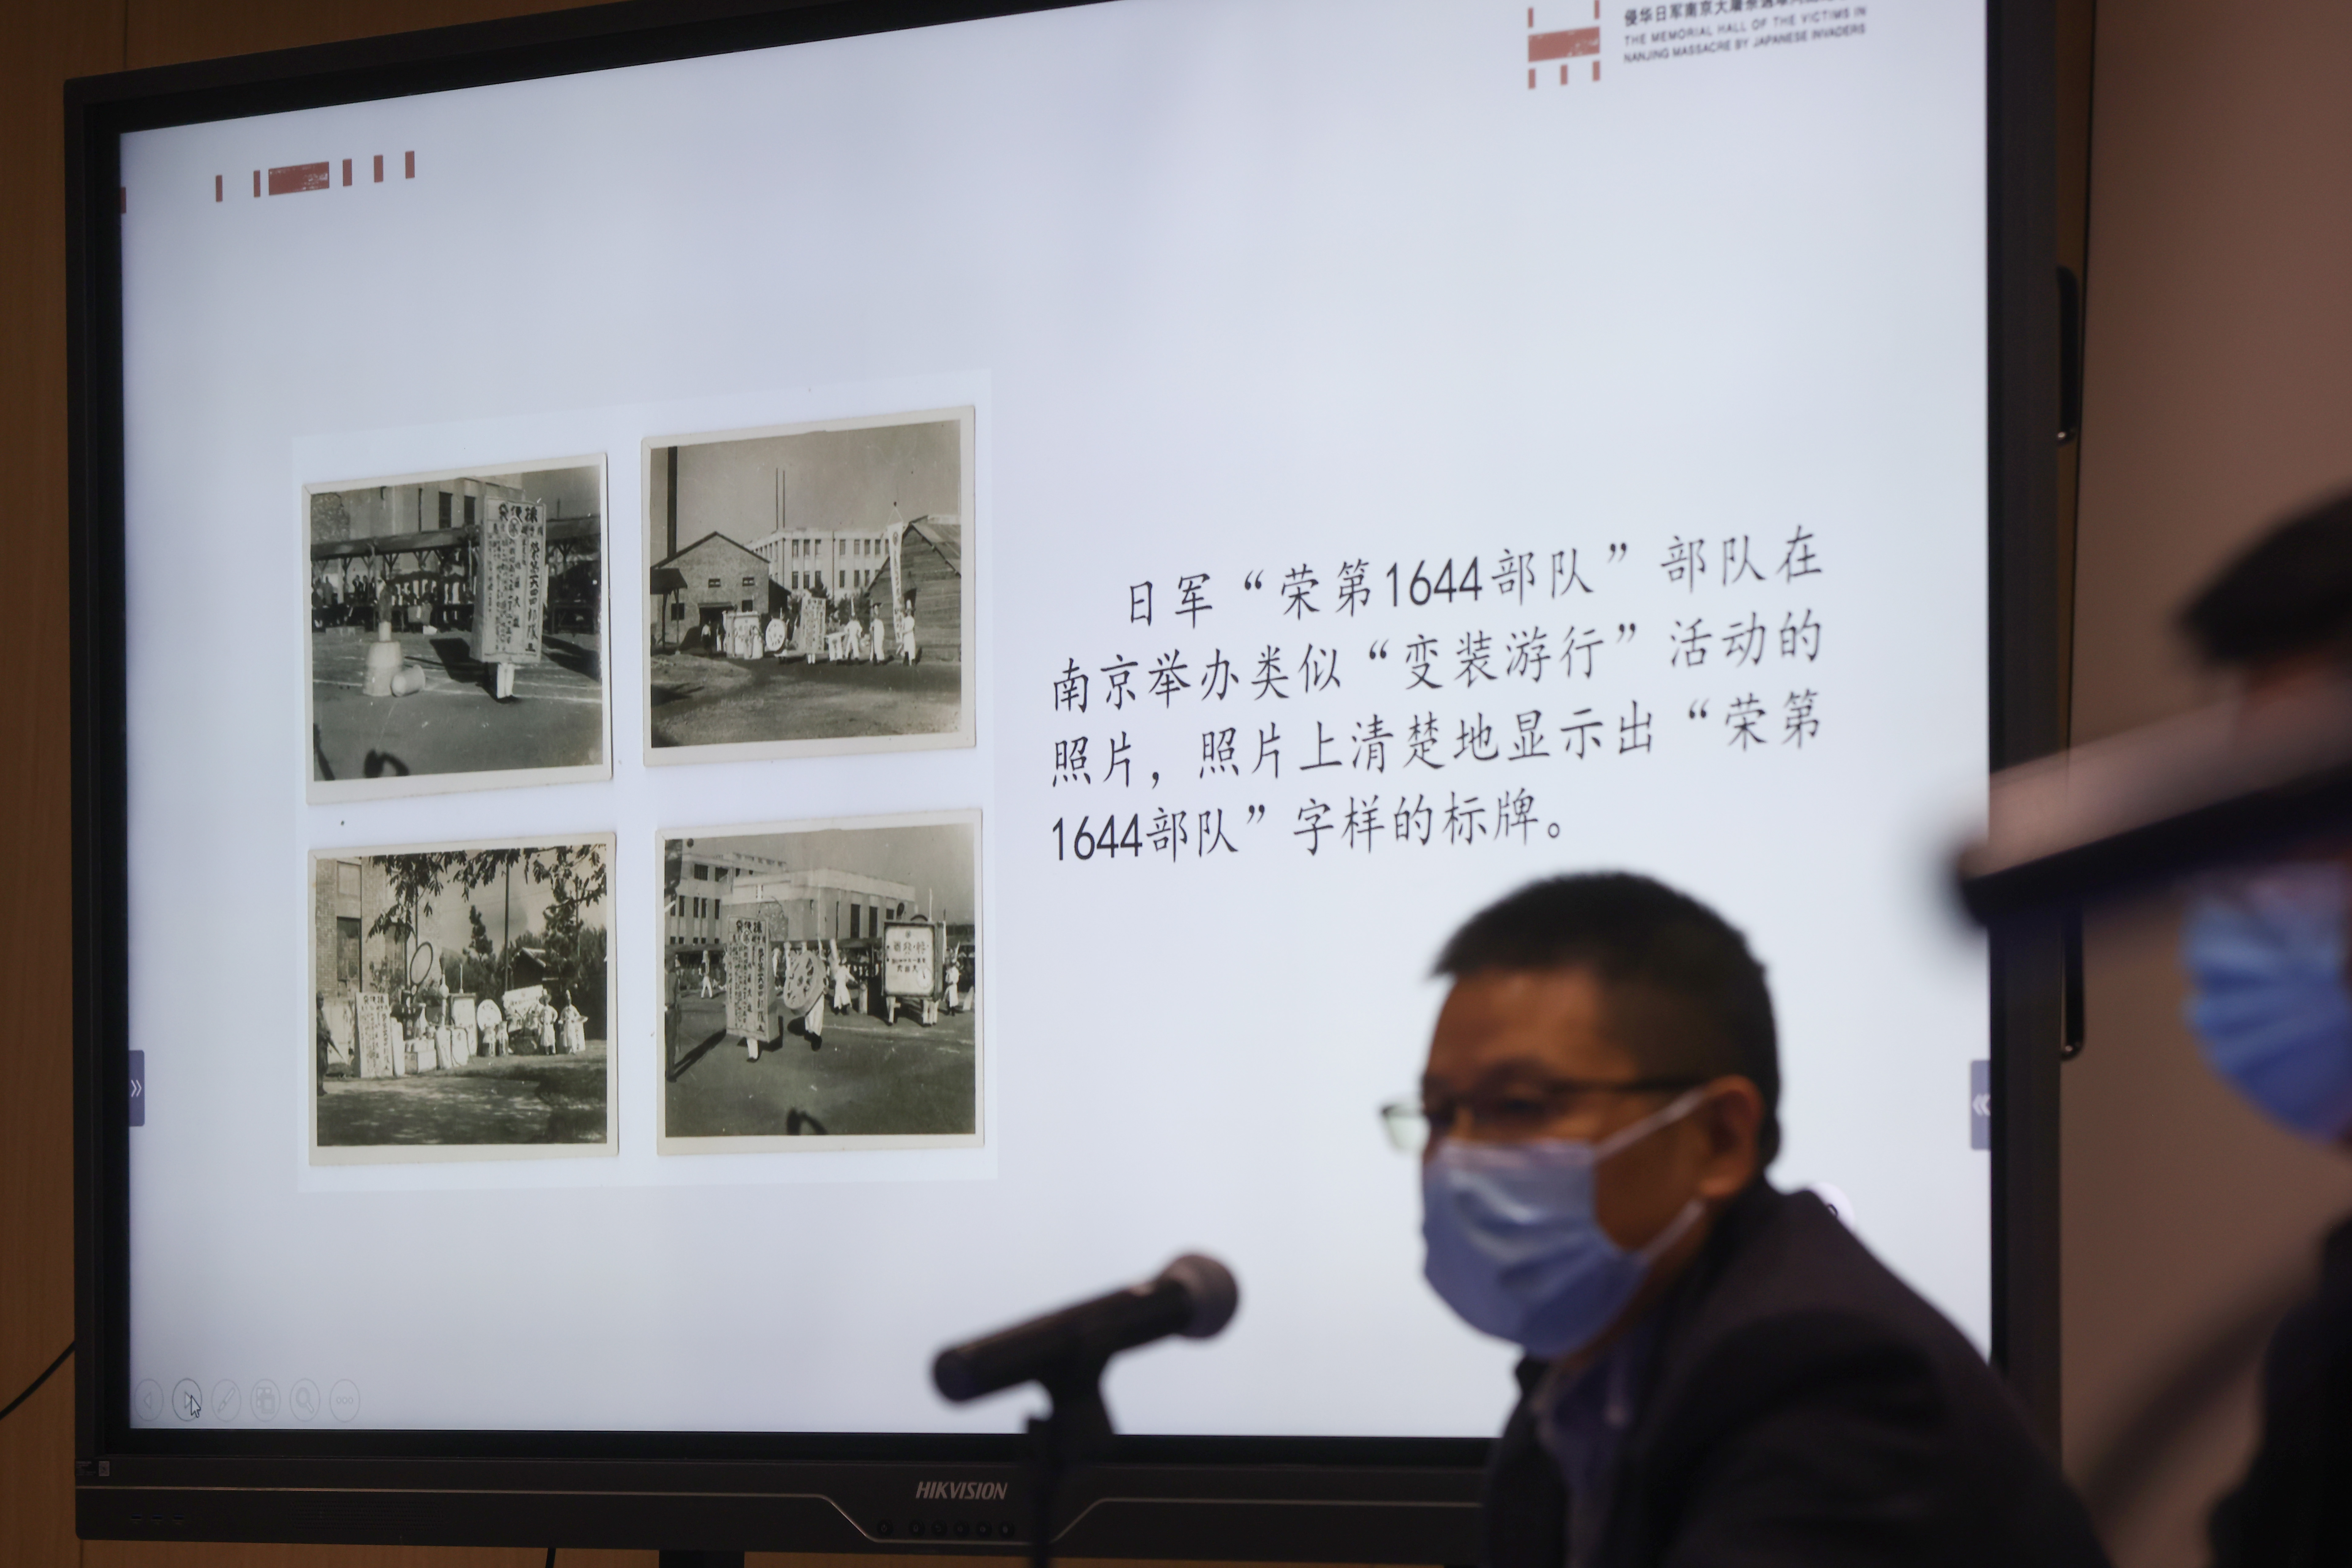 工作人員介紹侵華日軍「榮第1644部隊」在南京舉辦類似「變裝遊行」活動的照片，照片上清楚地顯示出「榮第1644部隊」字樣的標牌。（中新社）